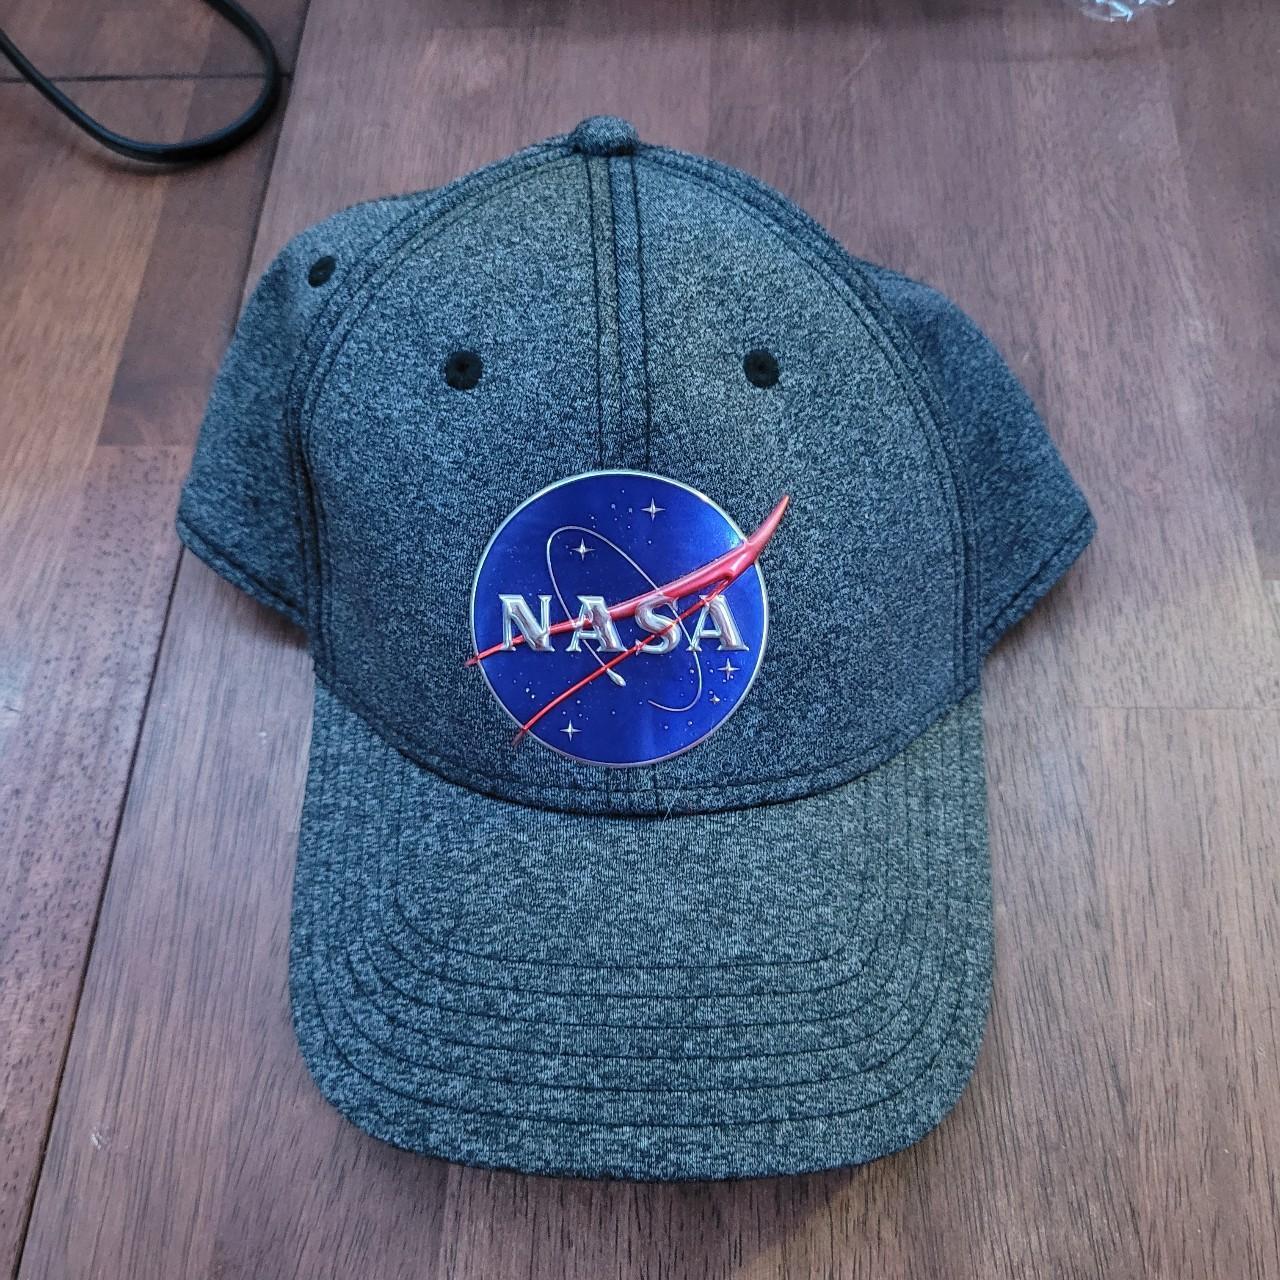 NASA billed hat Bought at NASA in Texas - Depop